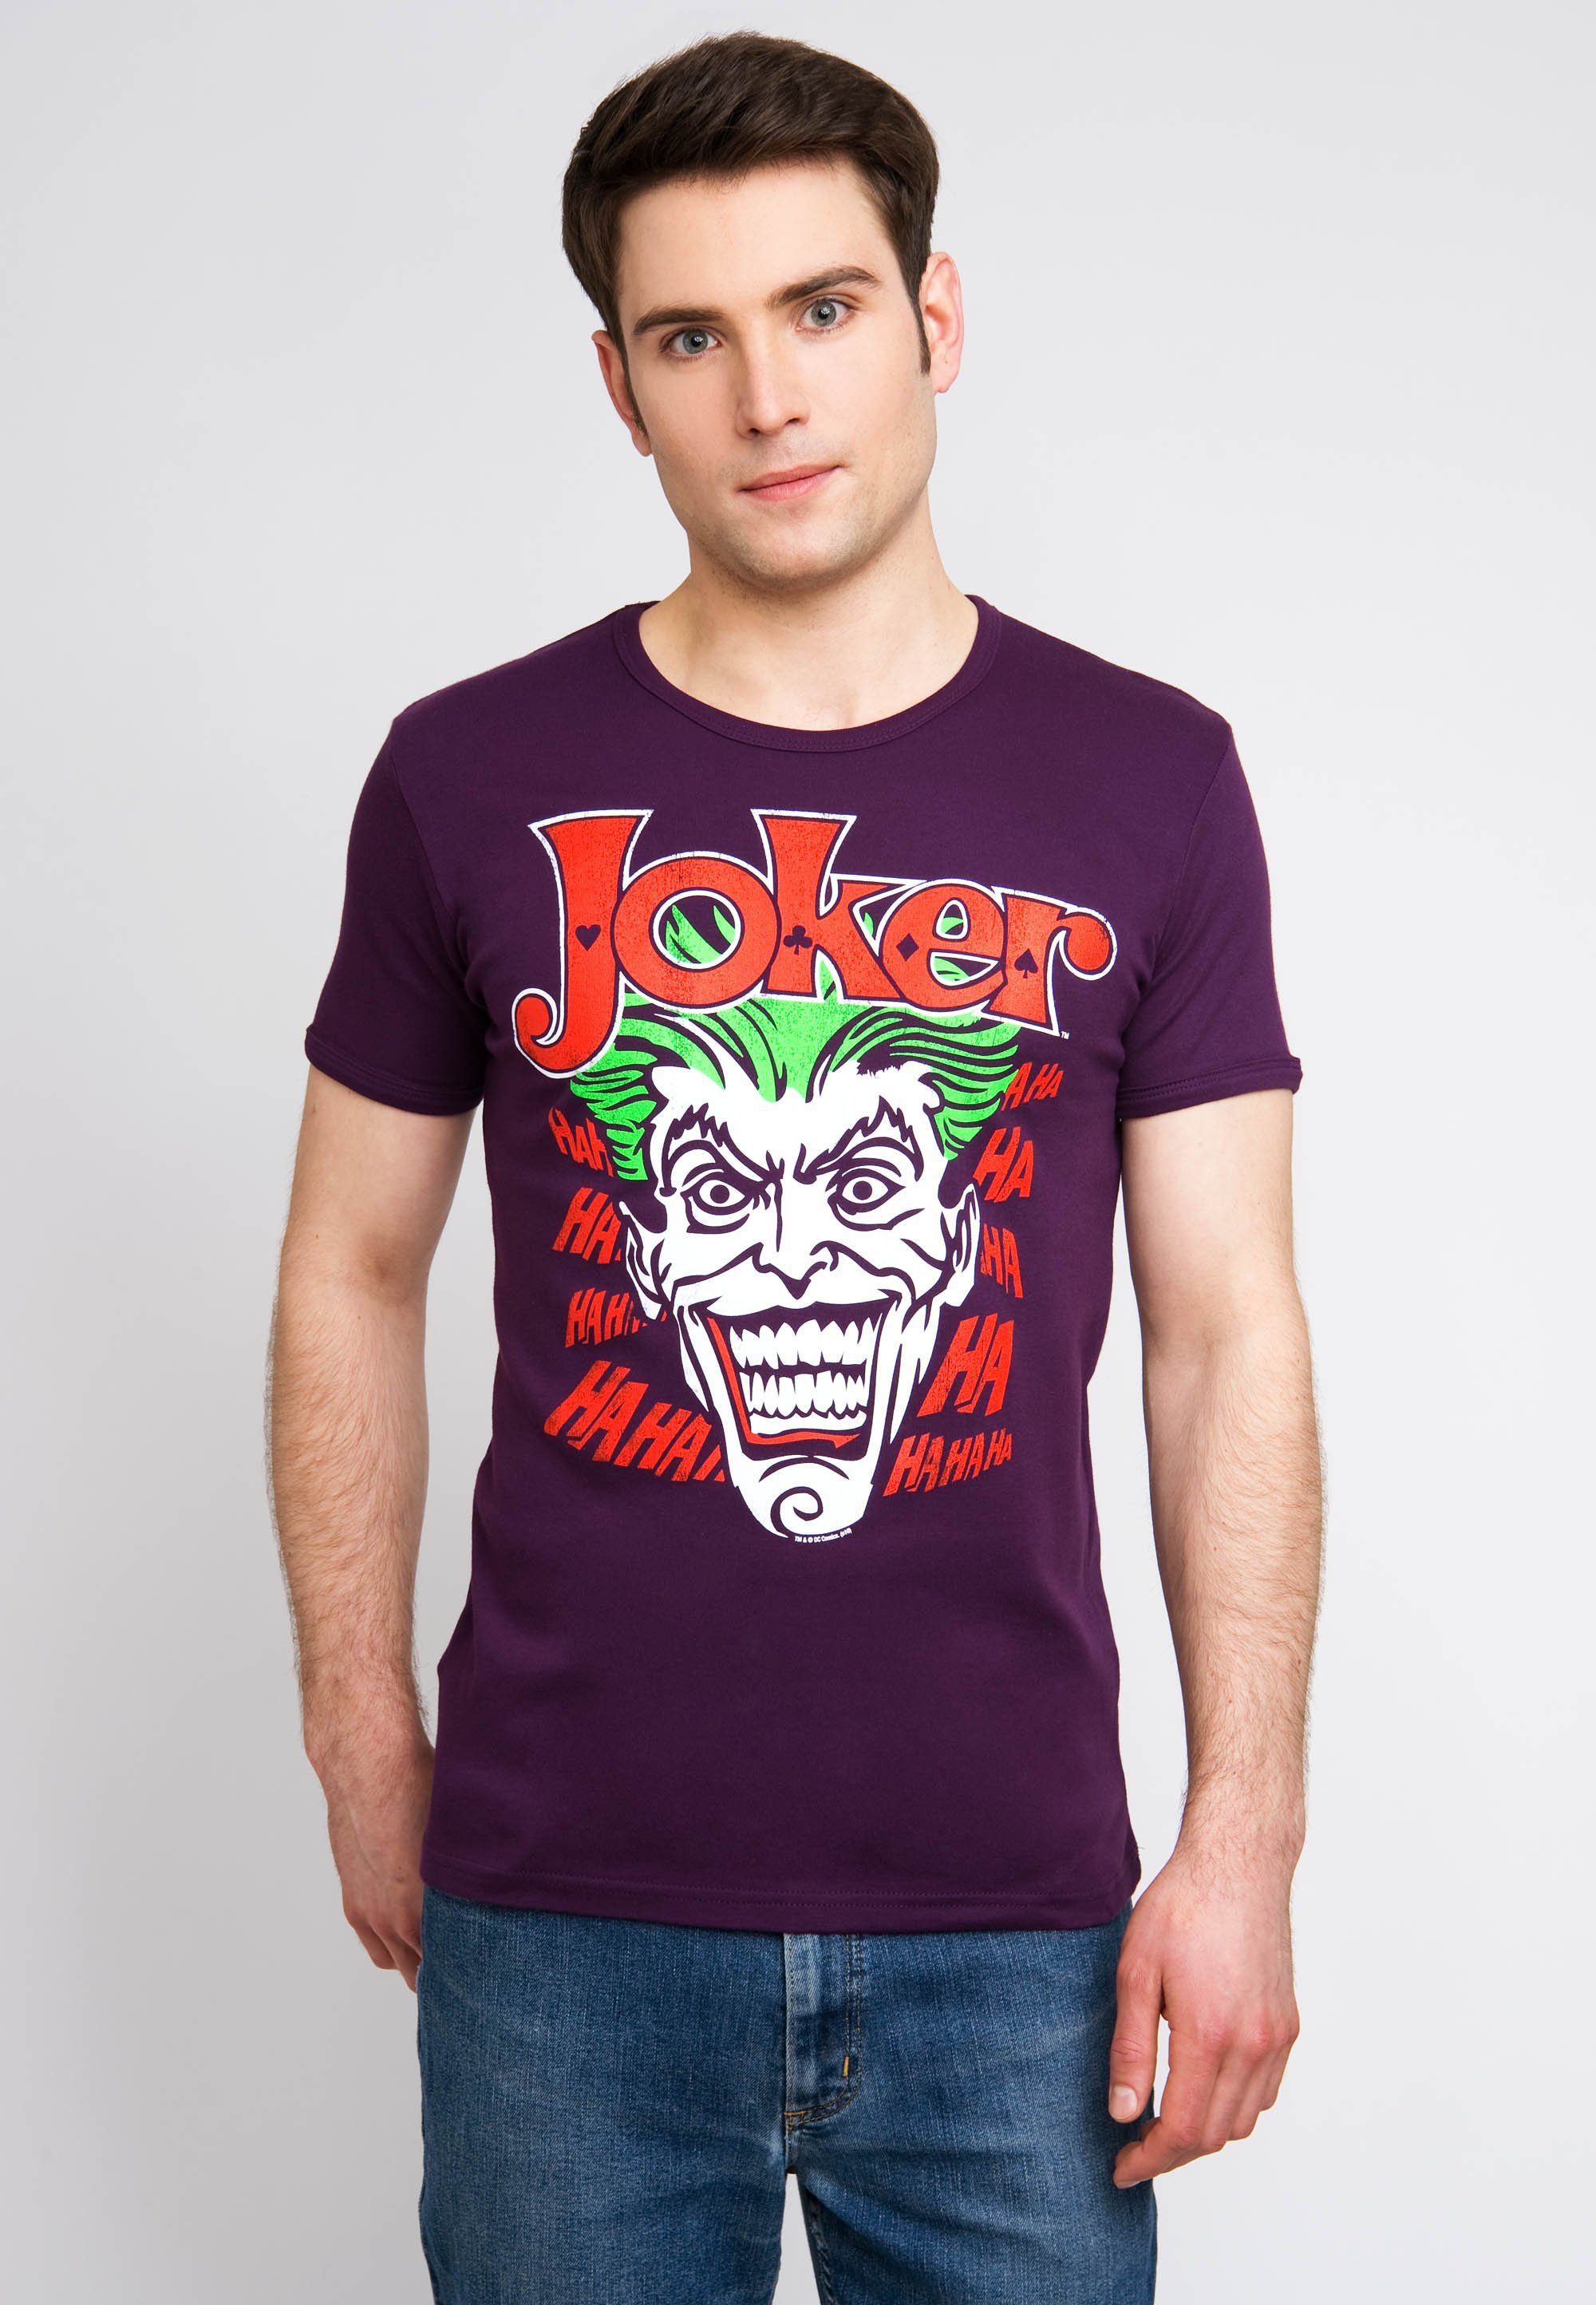 LOGOSHIRT T-Shirt Joker bunt mit kultigem Batman Joker-Print